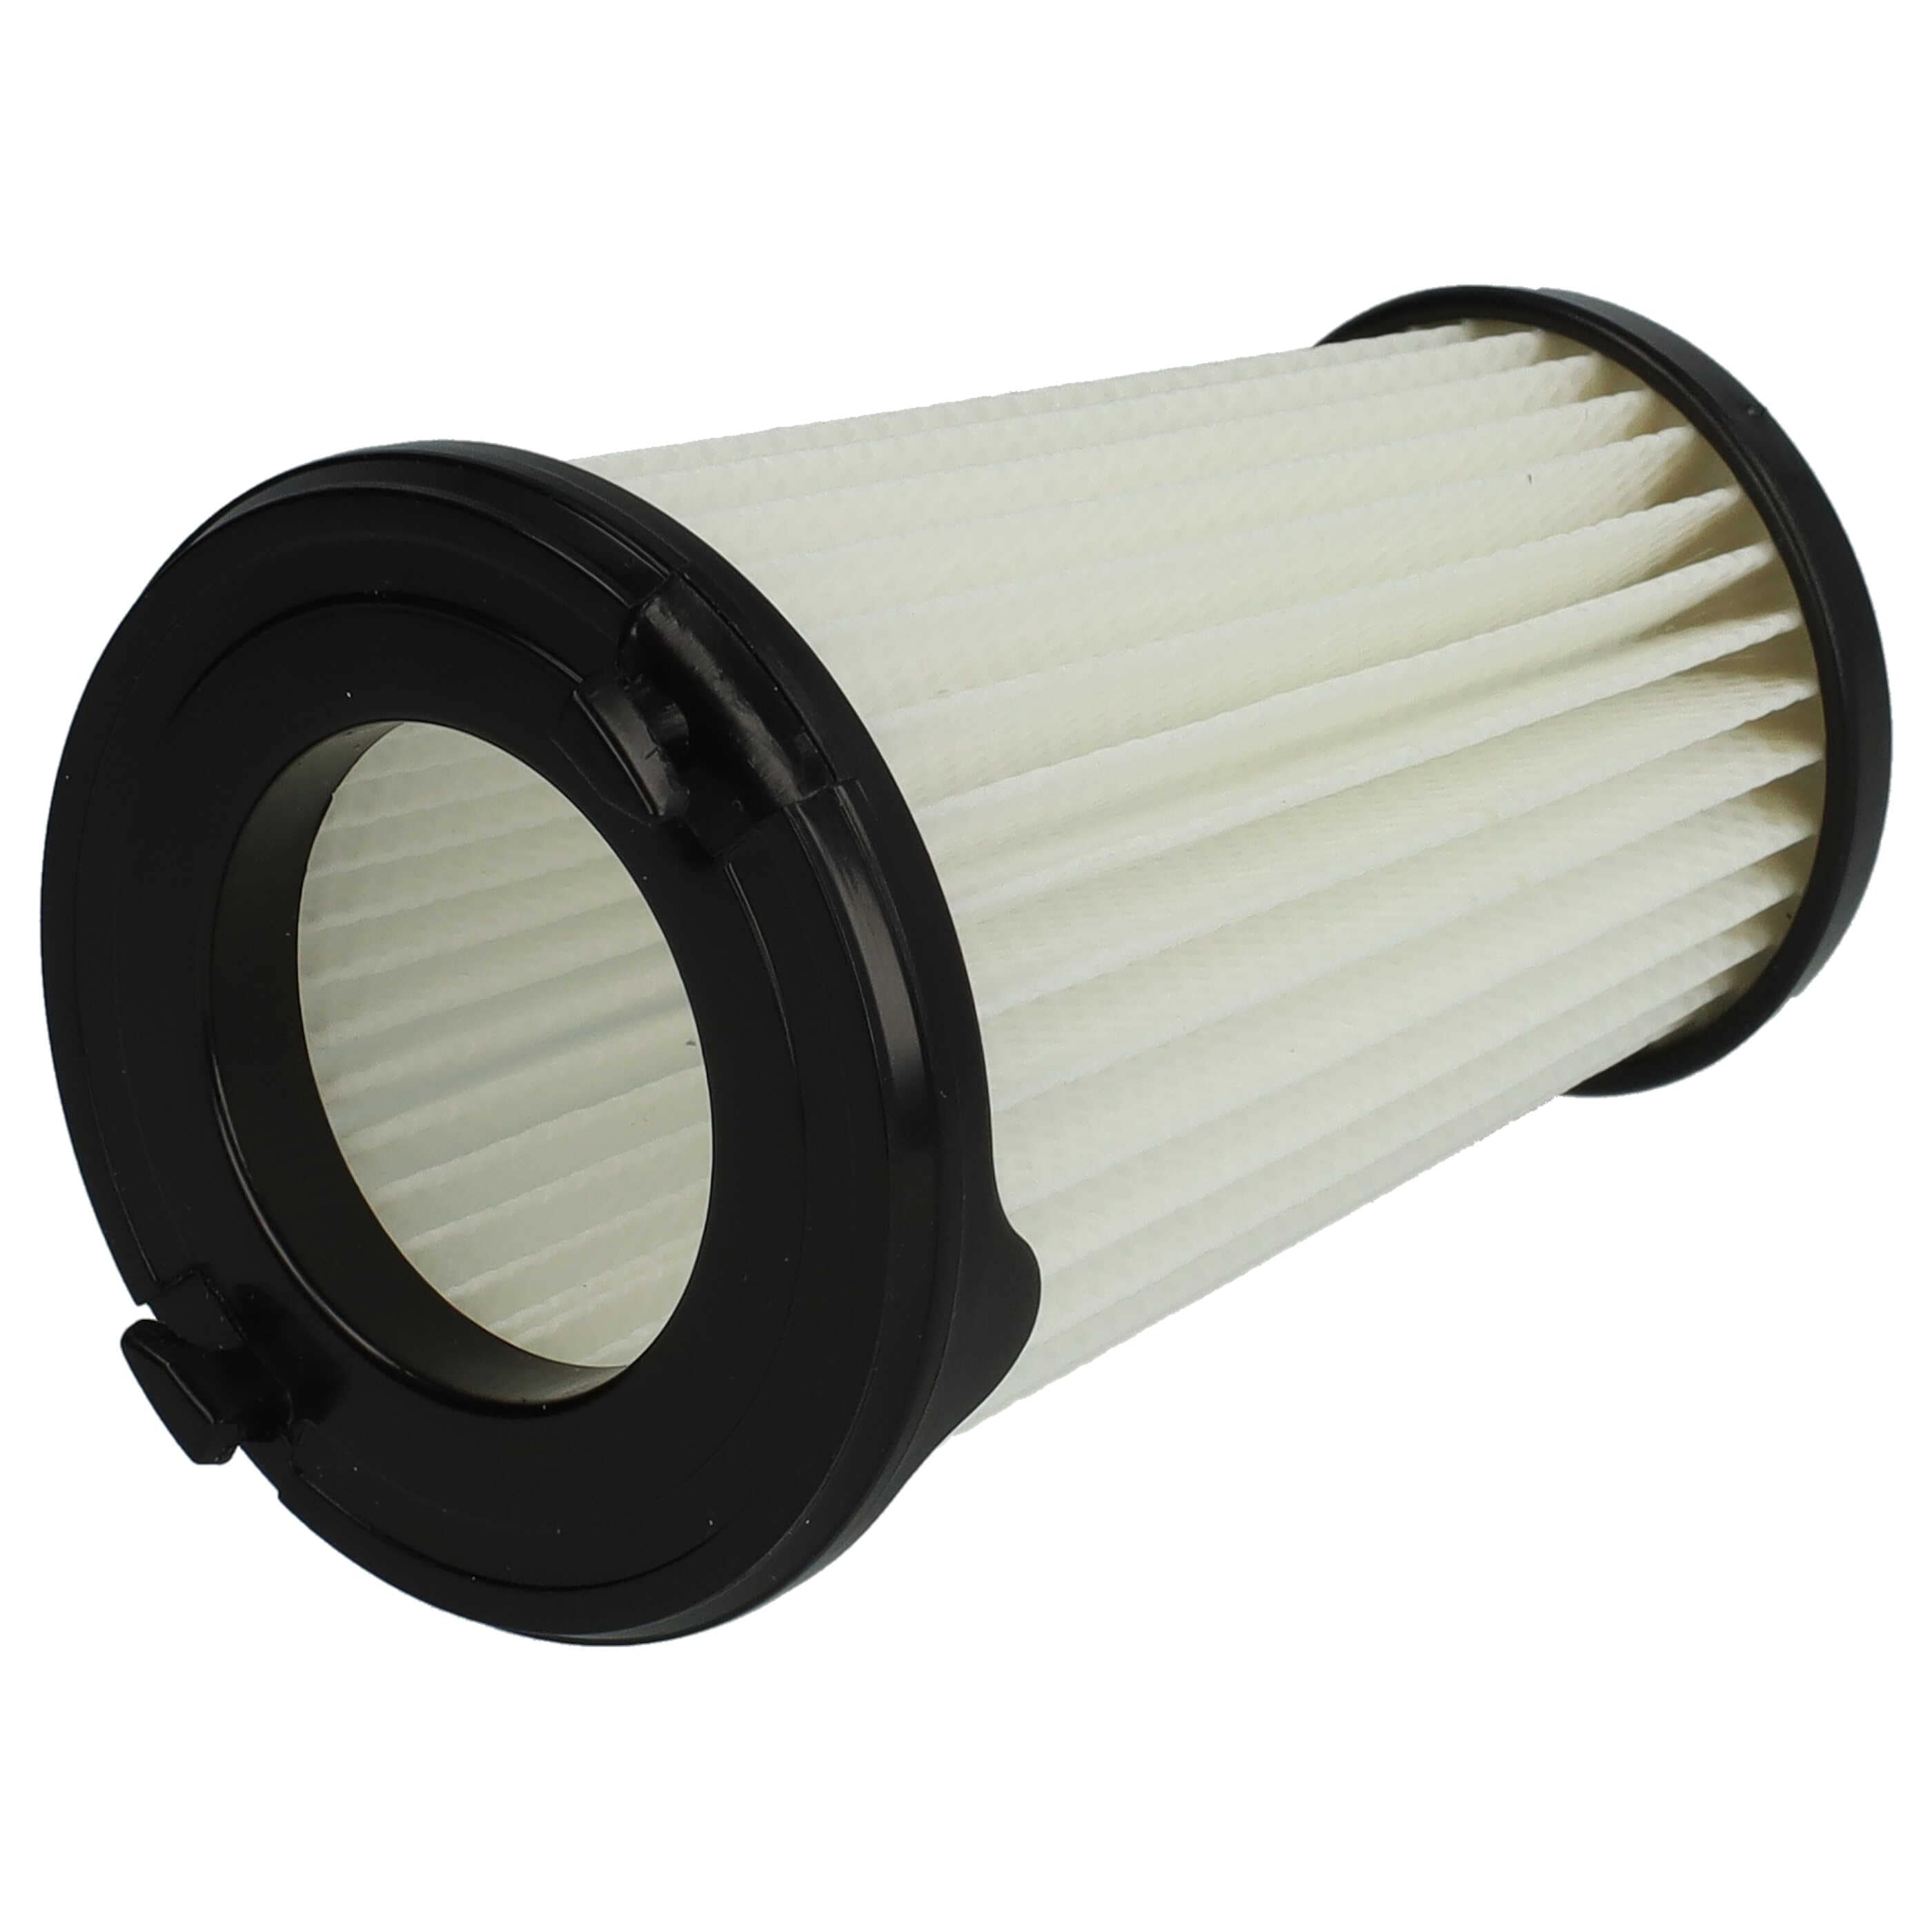 2x Filtr do odkurzacza Electrolux zamiennik AEG 9001683755, 90094073100 - filtr lamelowy, czarny / biały